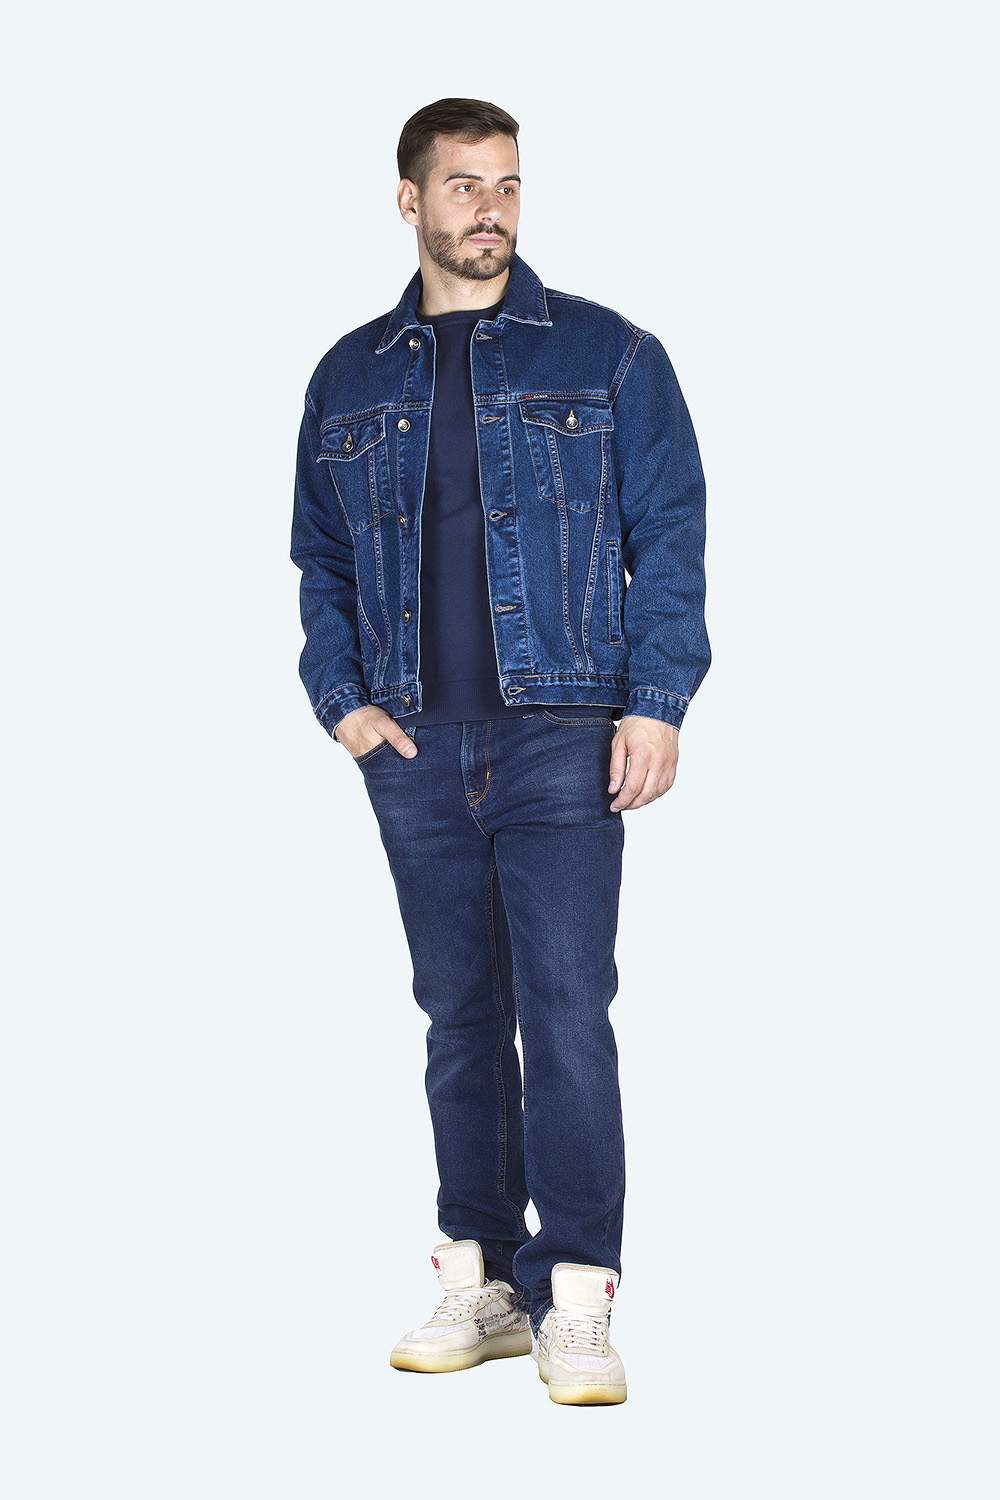 Джинсовая куртка мужская Dairos GD5060104 синяя XL